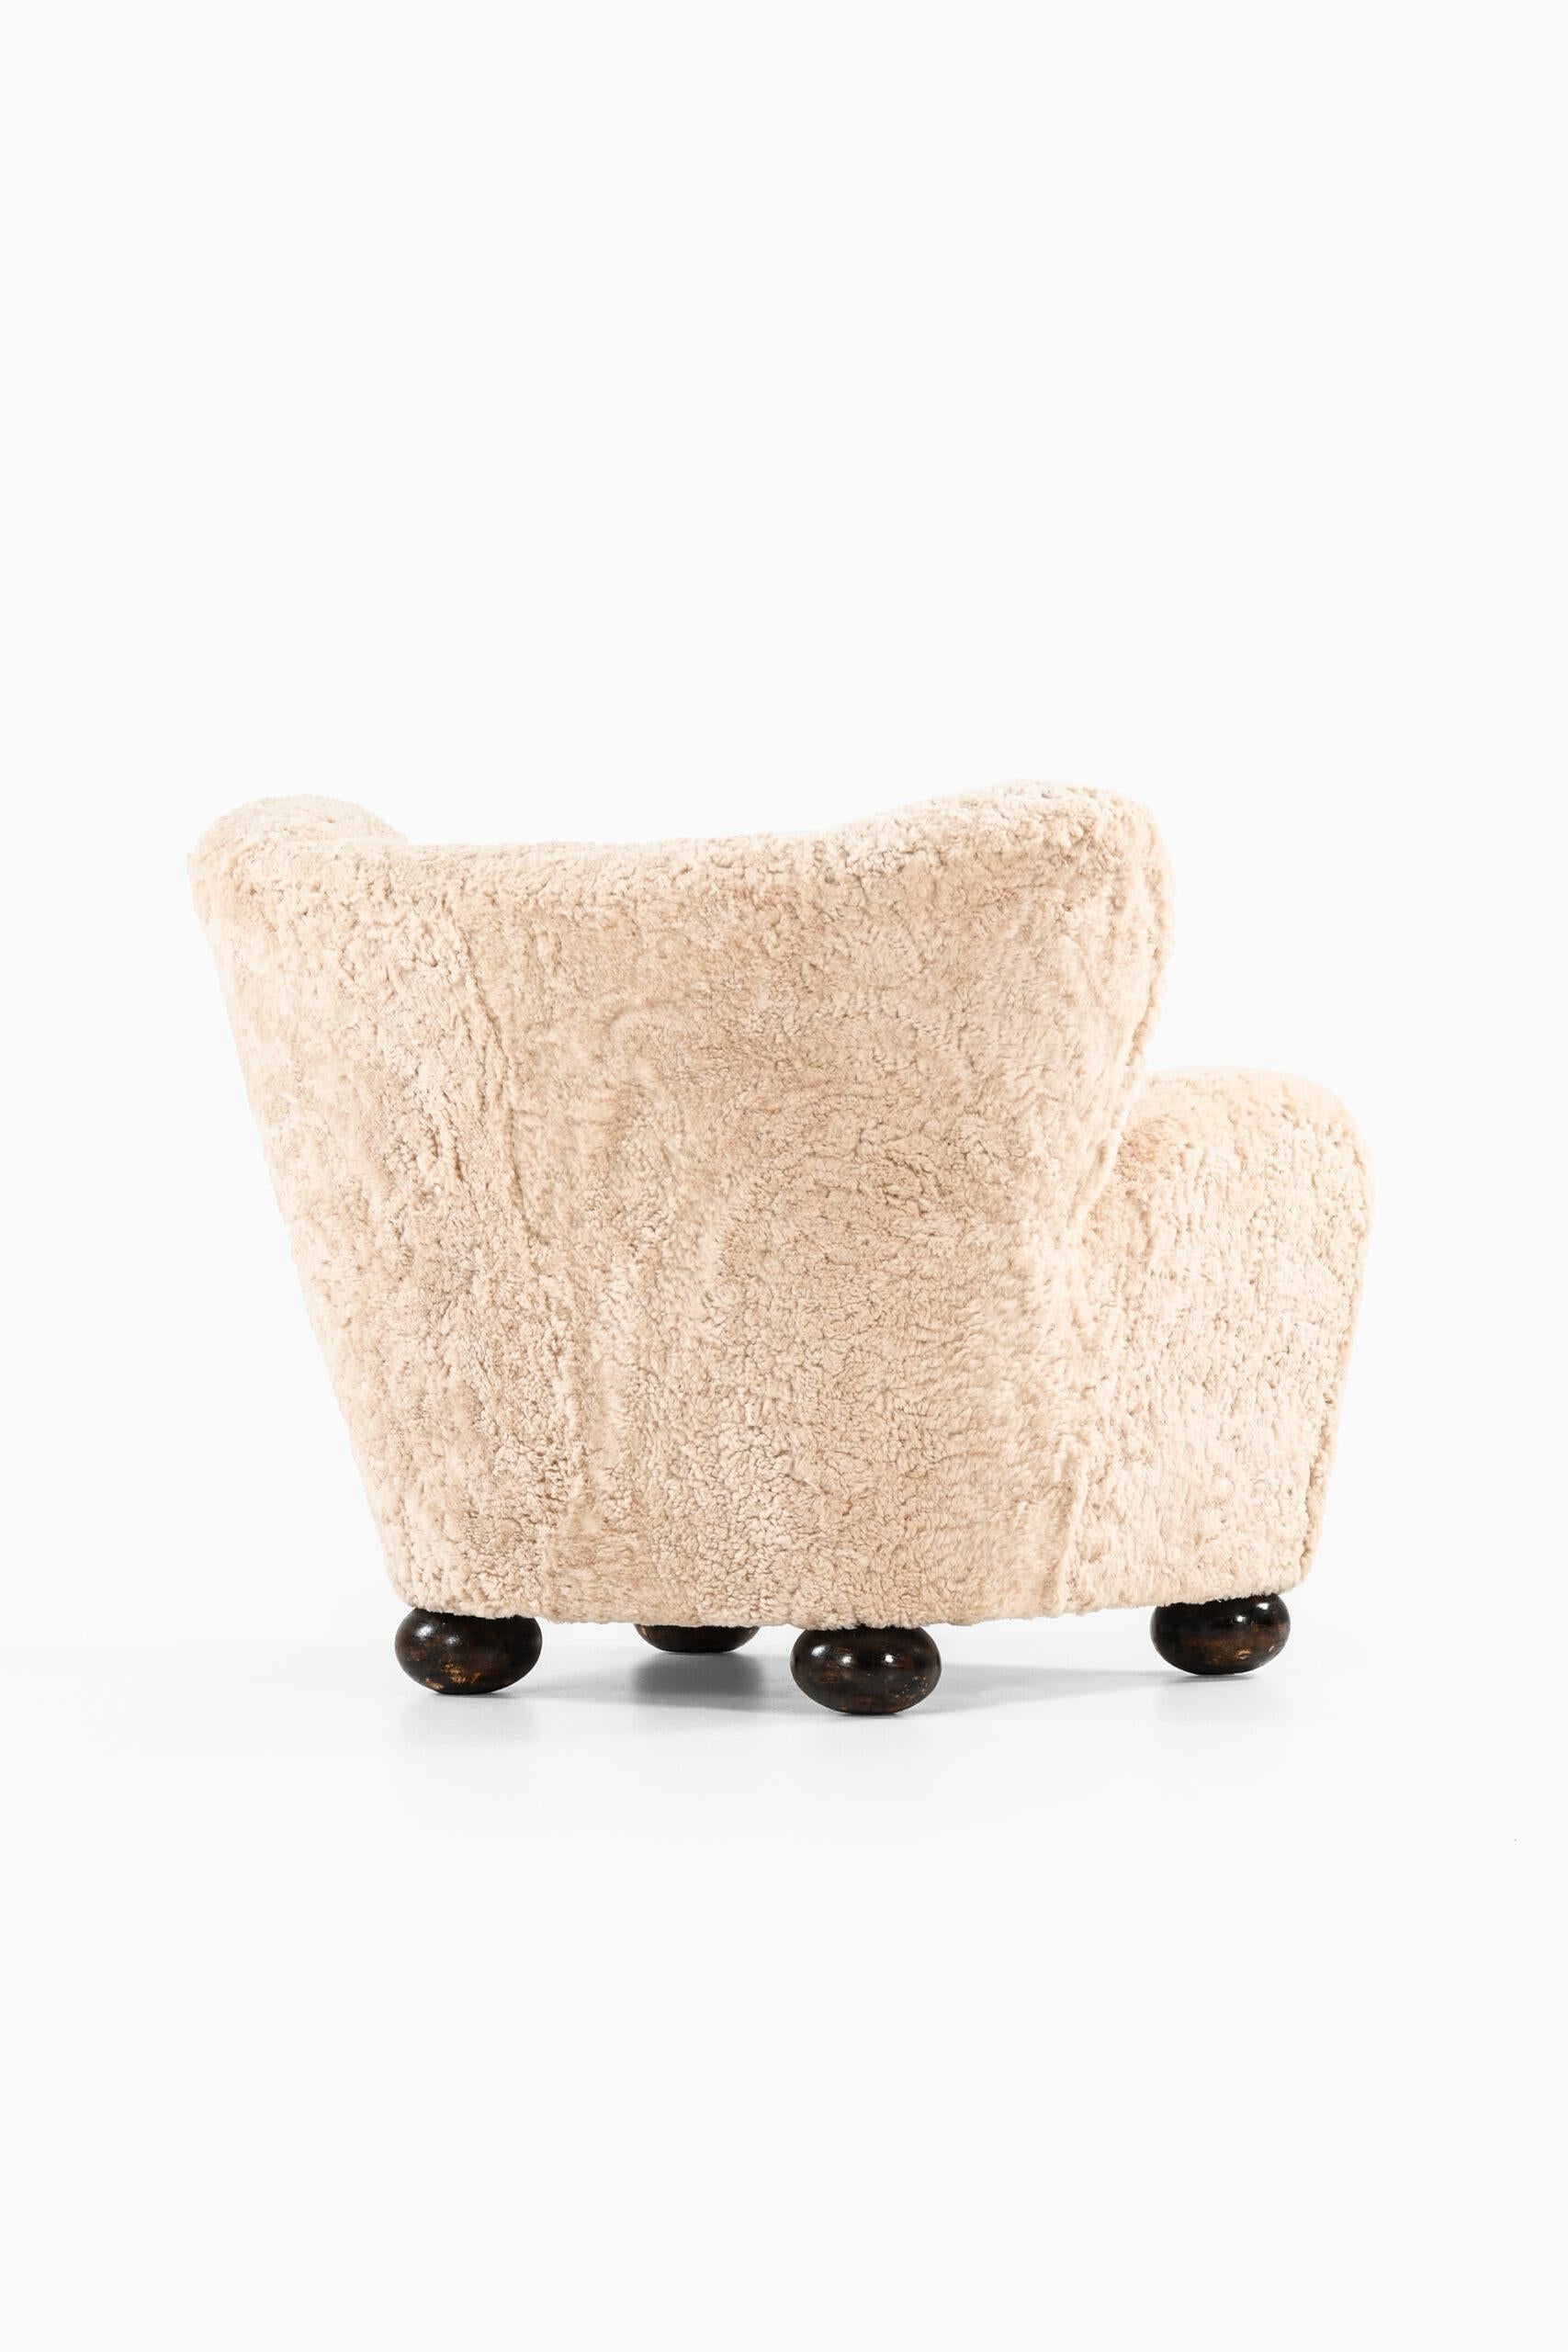 Easy Chair Modell Aulanko, Hergestellt von Hmenlinna in Finnland, vonta Blomstedt im Angebot 1